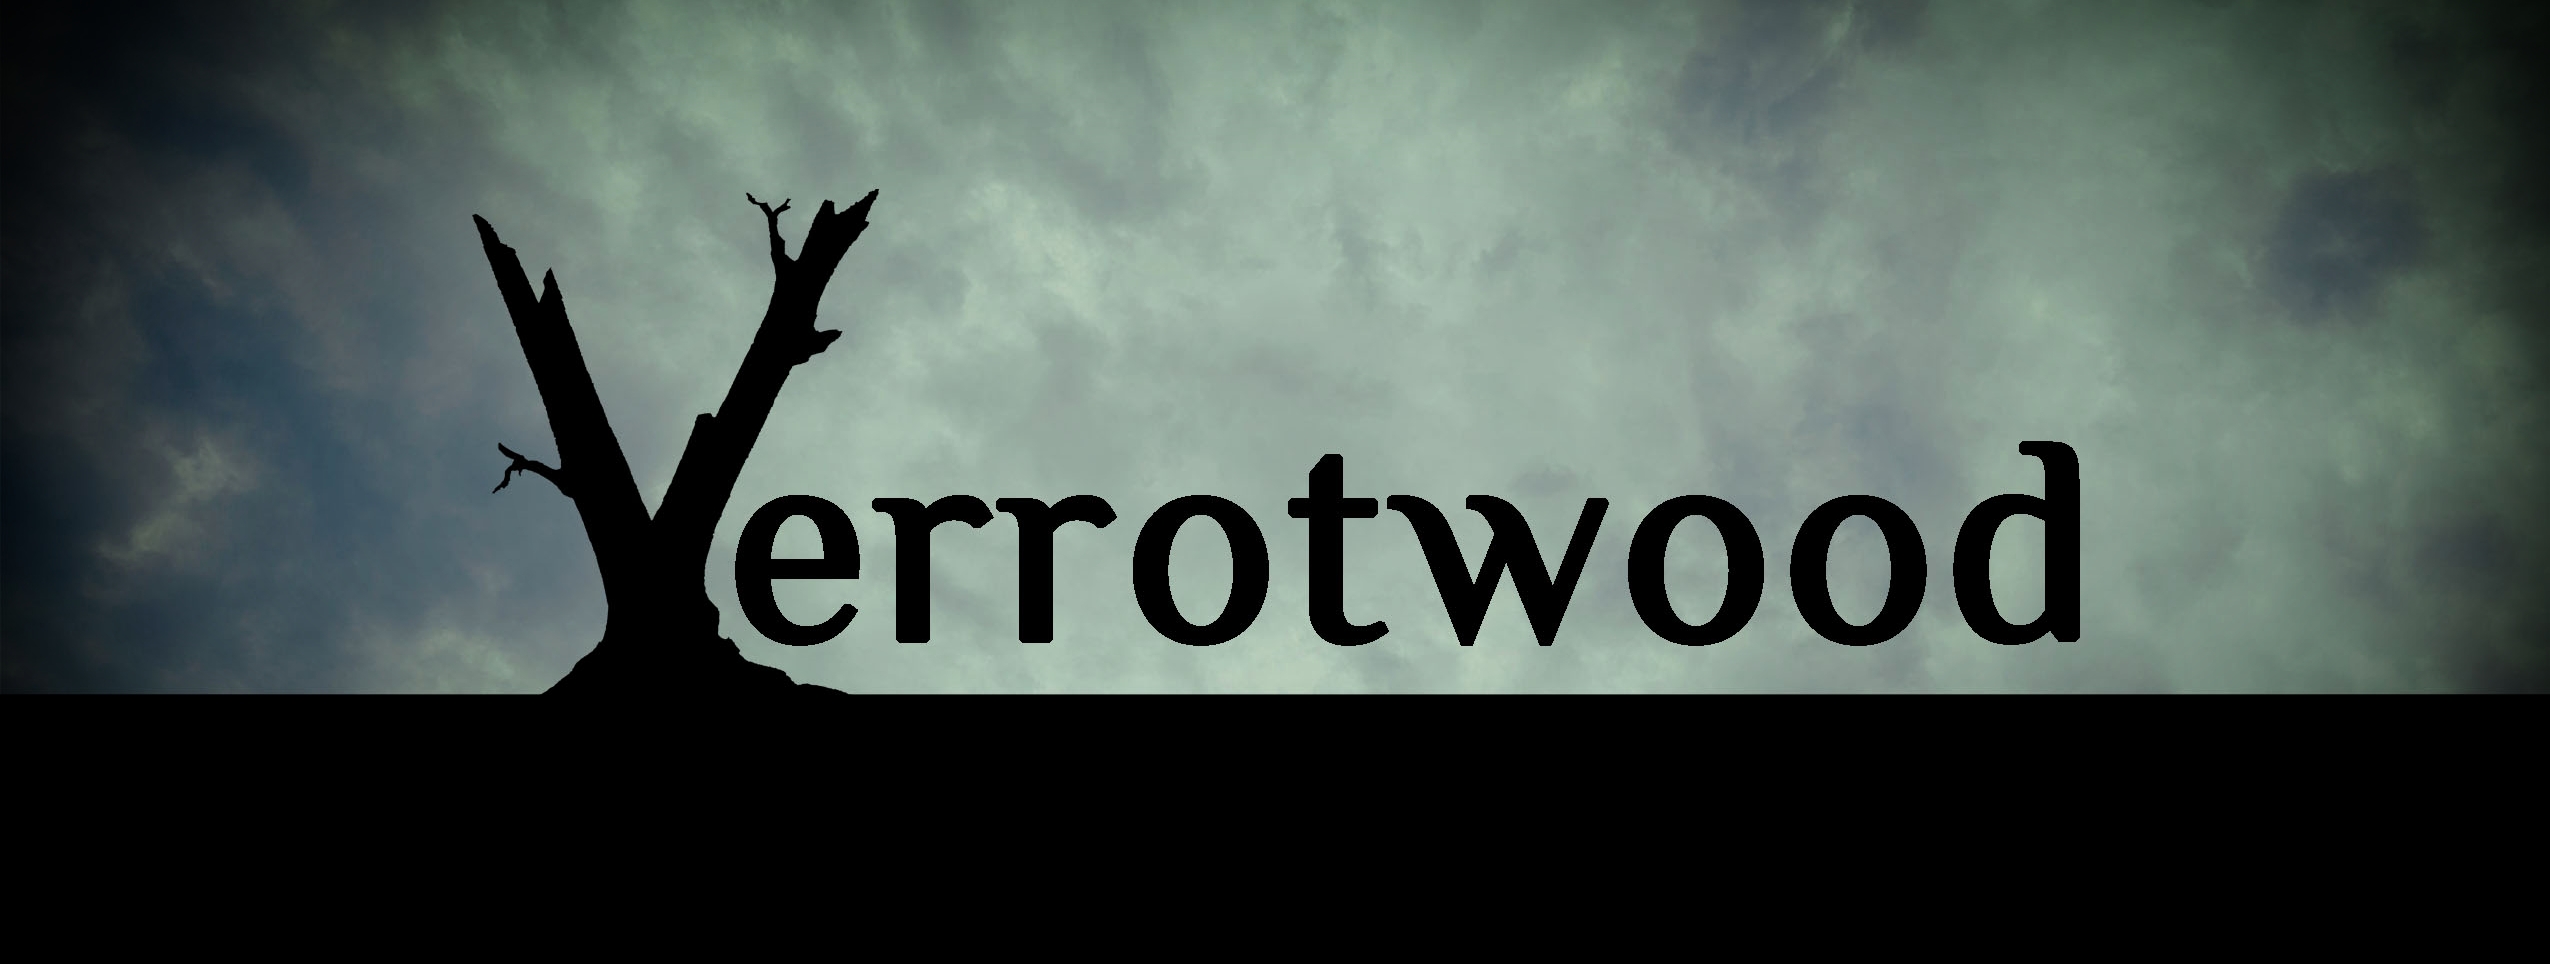 Verrotwood - Mike Crutchett 23